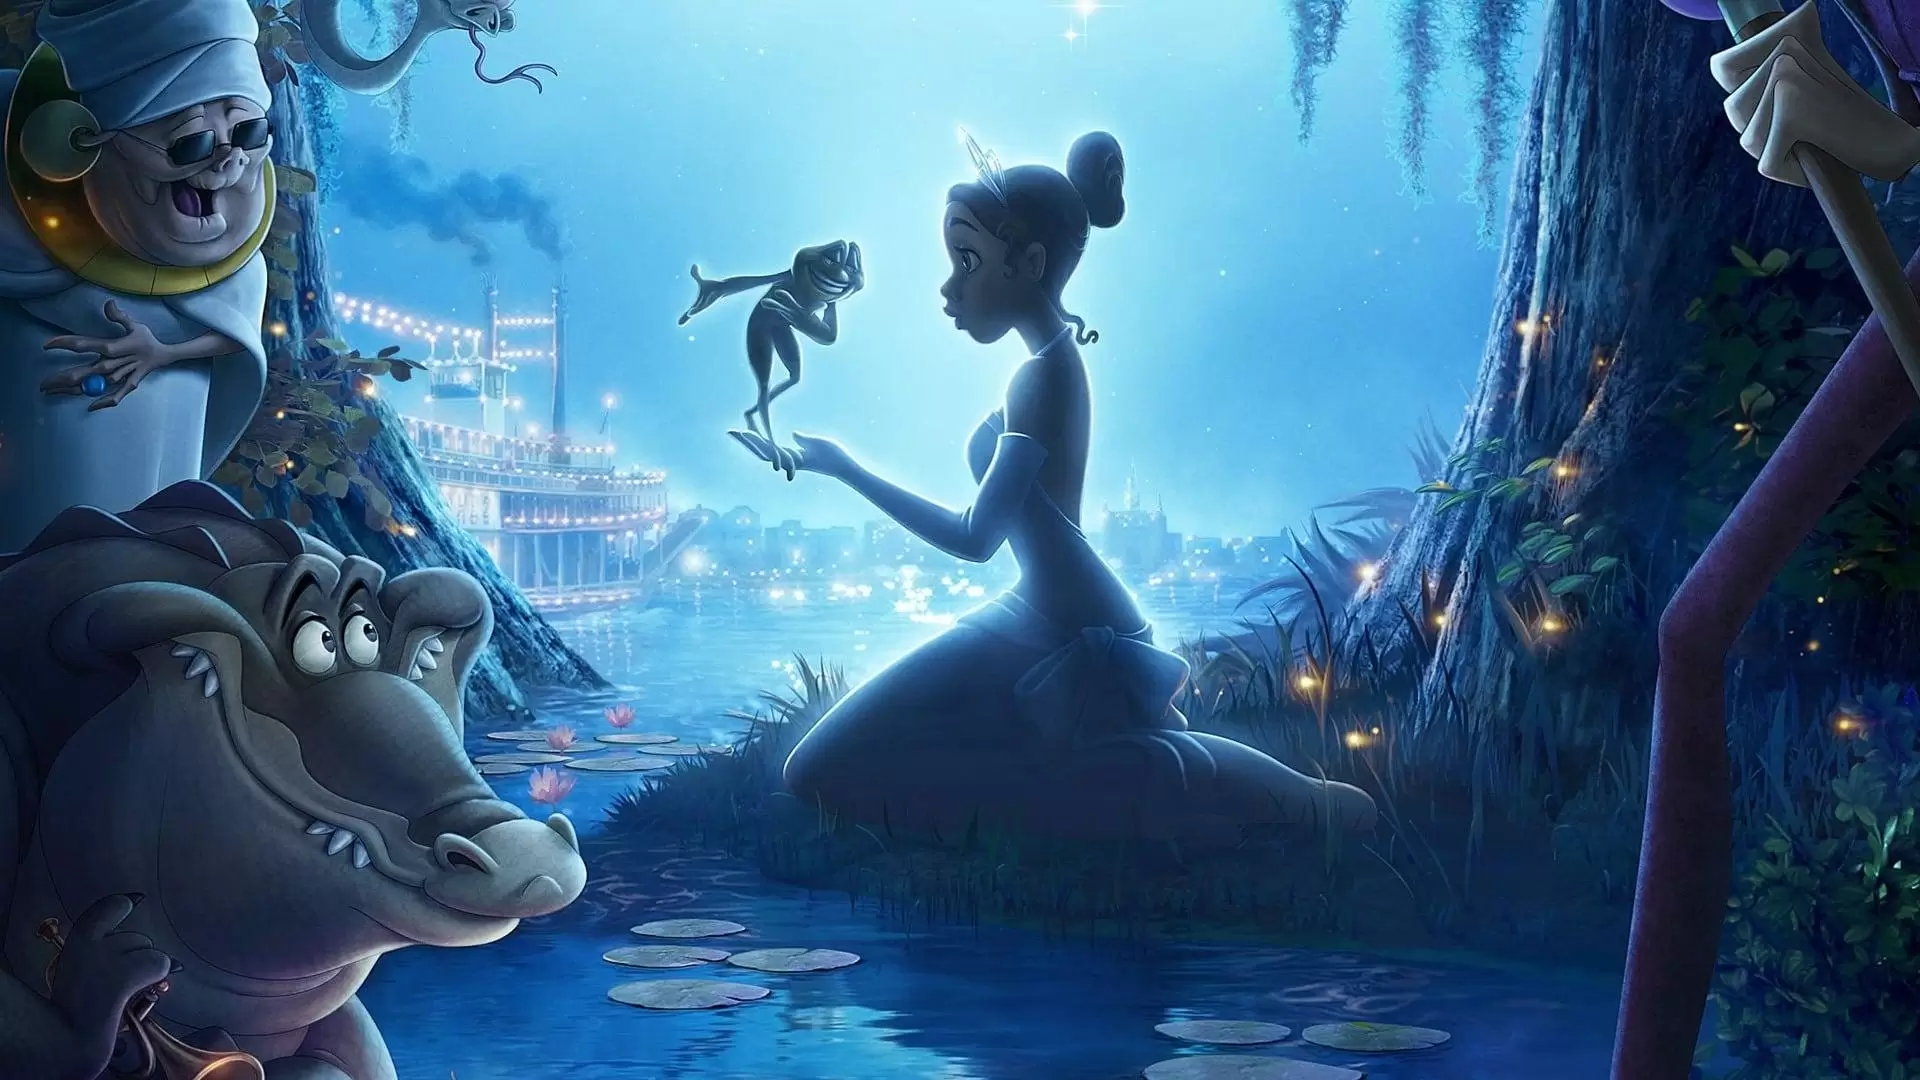 دانلود انیمیشن The Princess and the Frog 2009 (شاهزاده و قورباغه) با زیرنویس فارسی و تماشای آنلاین